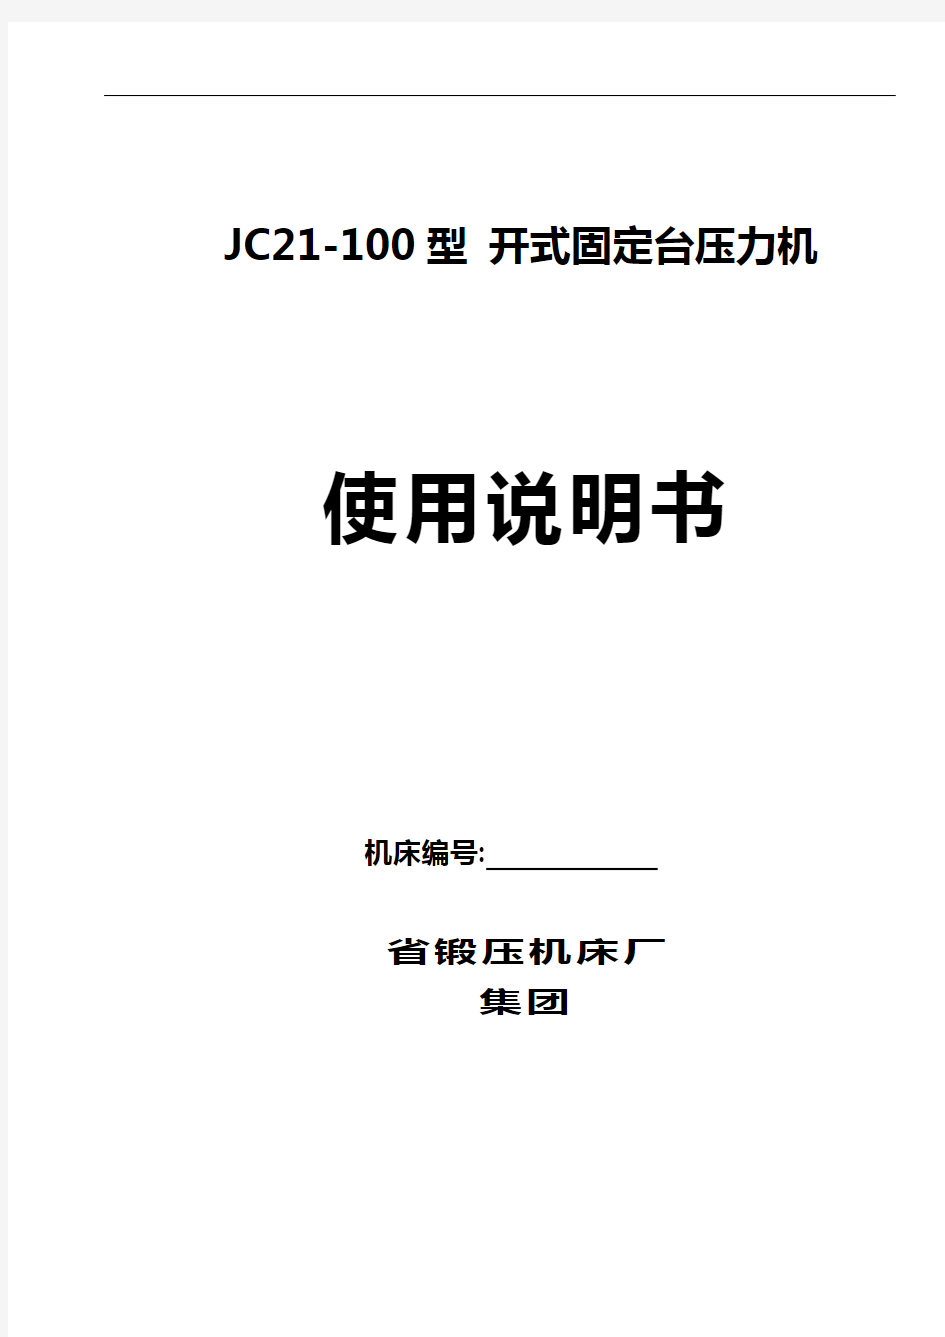 JC21-100型 开式固定台压力机说明书